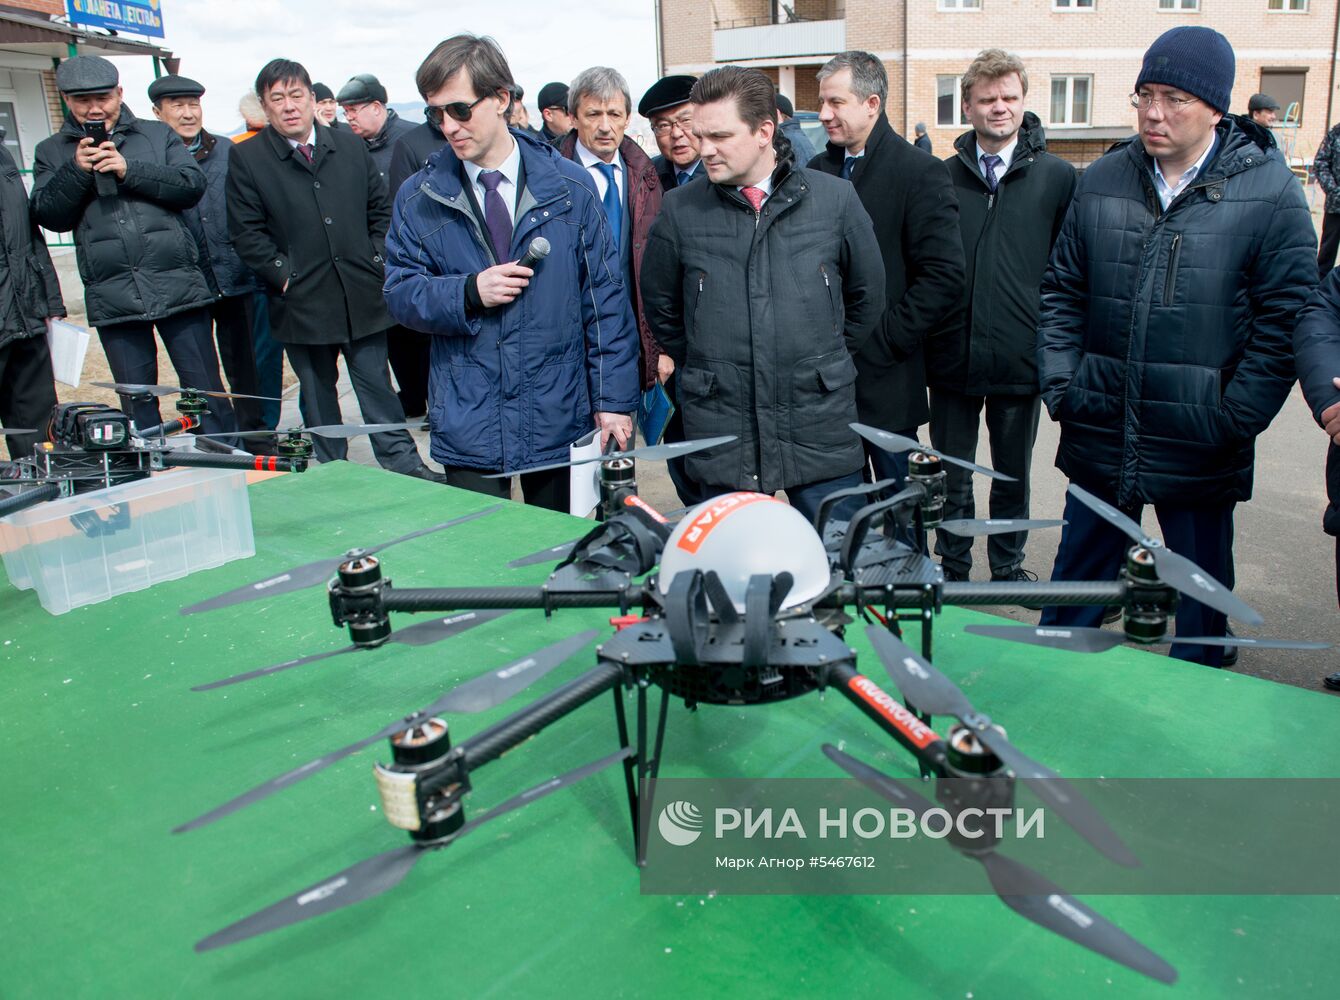 Испытательный полет дрона «Почты России»